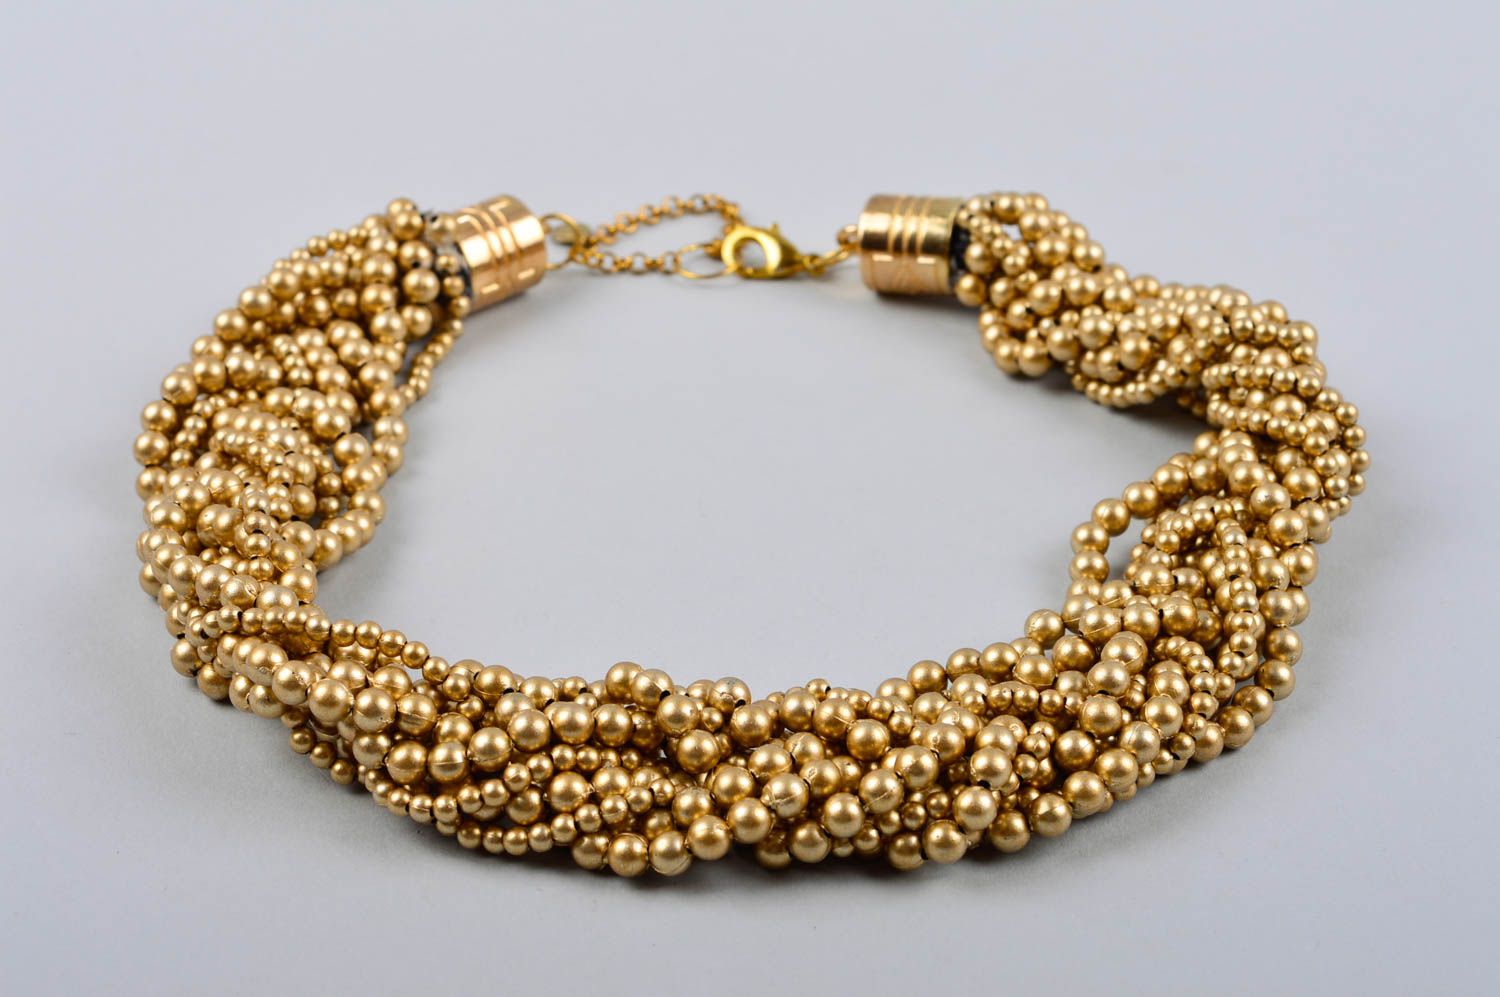 Handmade elegant beaded necklace stylish elegant accessory cute evening necklace photo 3